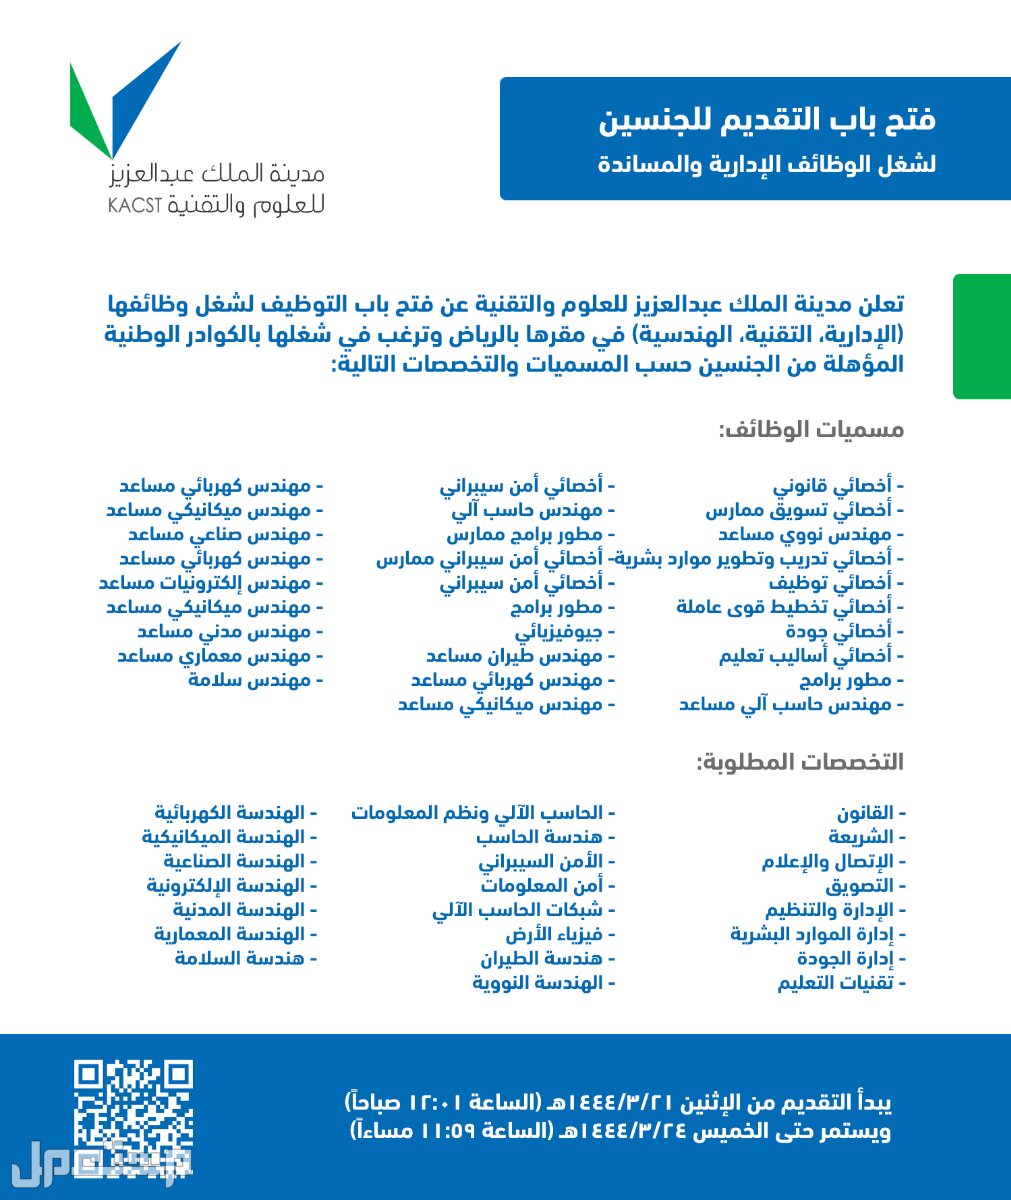 كل ما تحتاج إلى معرفته حول وظائف مدينة الملك عبدالعزيز للعلوم والتقنية في الإمارات العربية المتحدة وظائف مدينة الملك عبدالعزيز للعلوم والتقنية